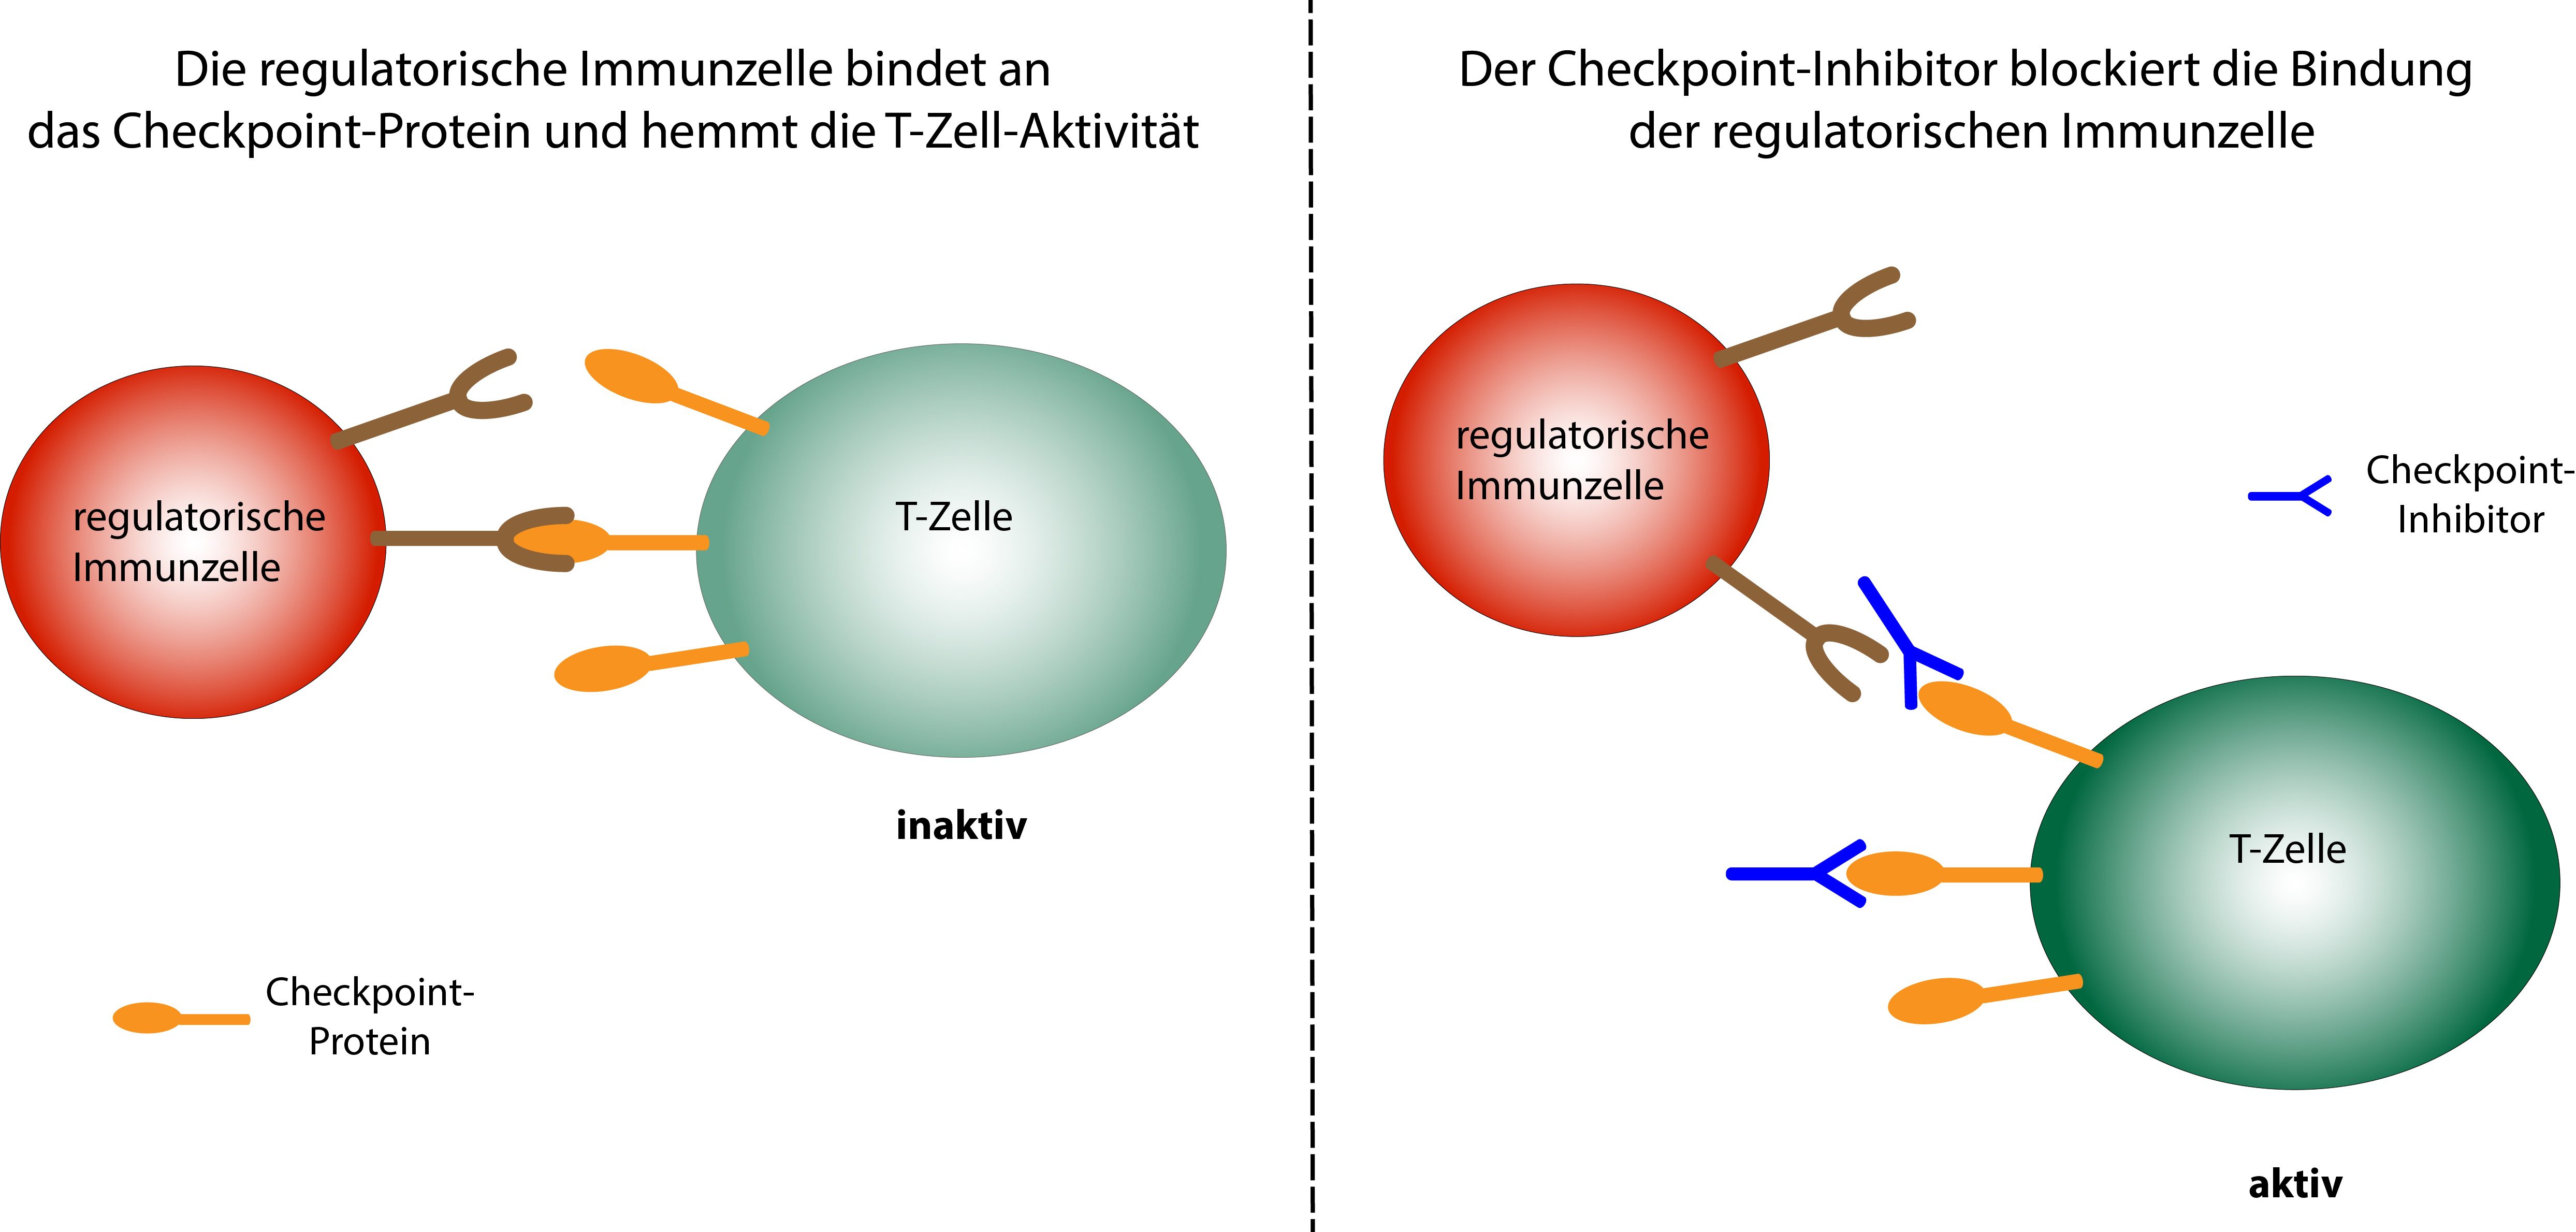 Schematische Darstellung der Wirkungsweise von Checkpoint-Inhibitoren. Regulatorische Immunzellen binden an Checkpoint-Proteine auf aktiven T-Zellen und hemmen so die T-Zell-Aktivität. Checkpoint-Inhibitoren verhindern die Bindung der regulatorischen Immunzellen, so dass die T-Zelle aktiv bleibt.